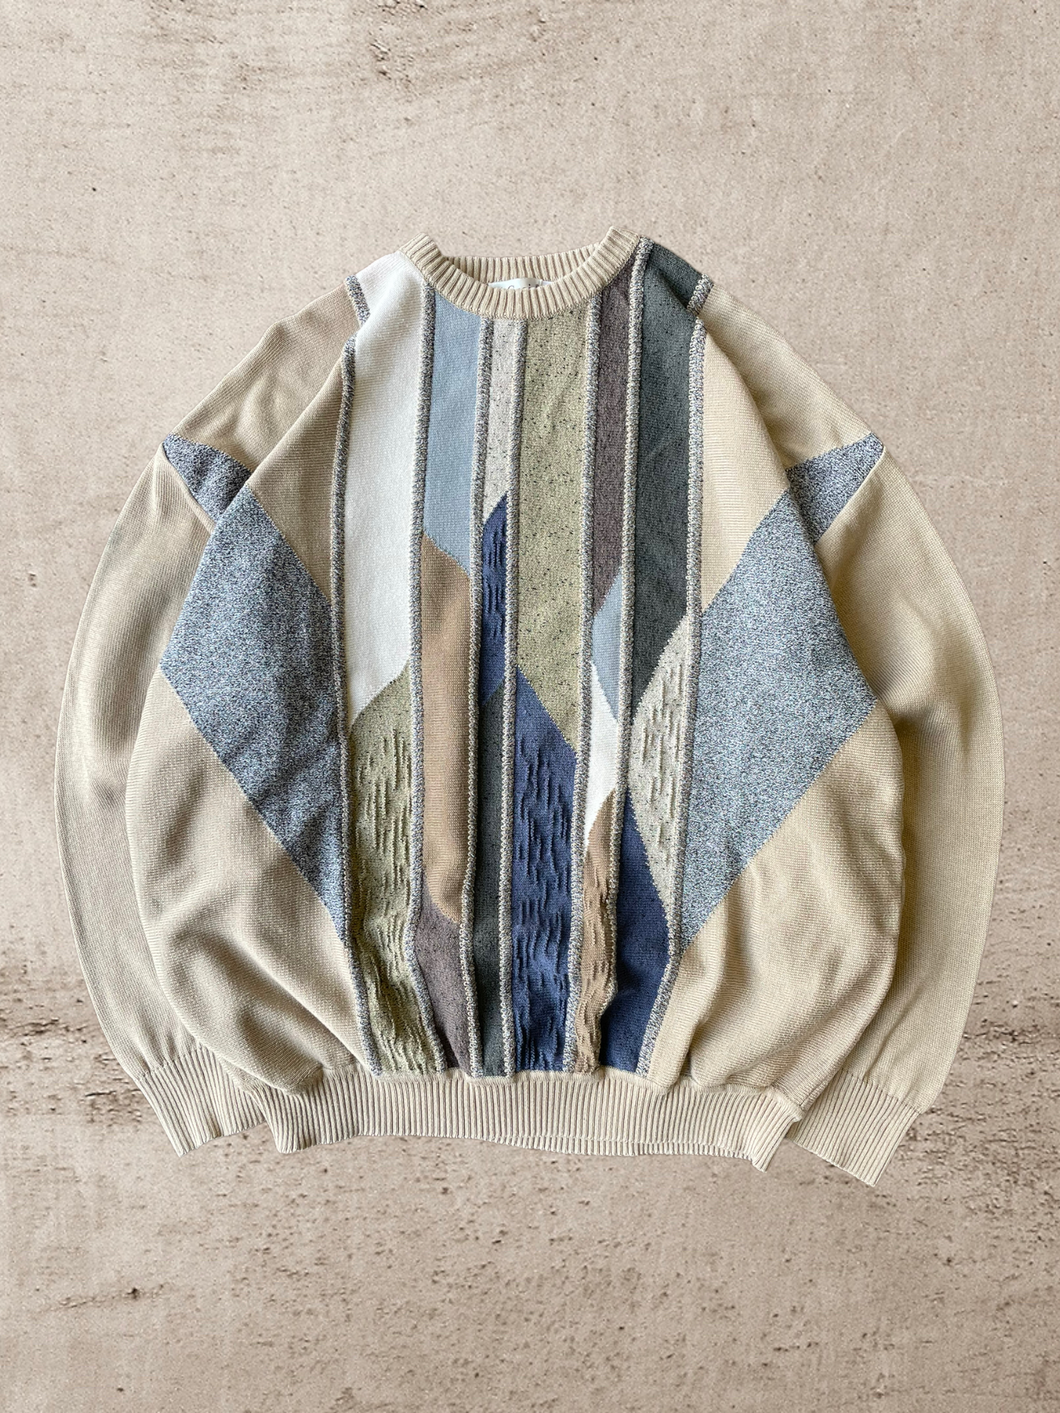 90s St. Croix Multicolor Knit Sweater - XL